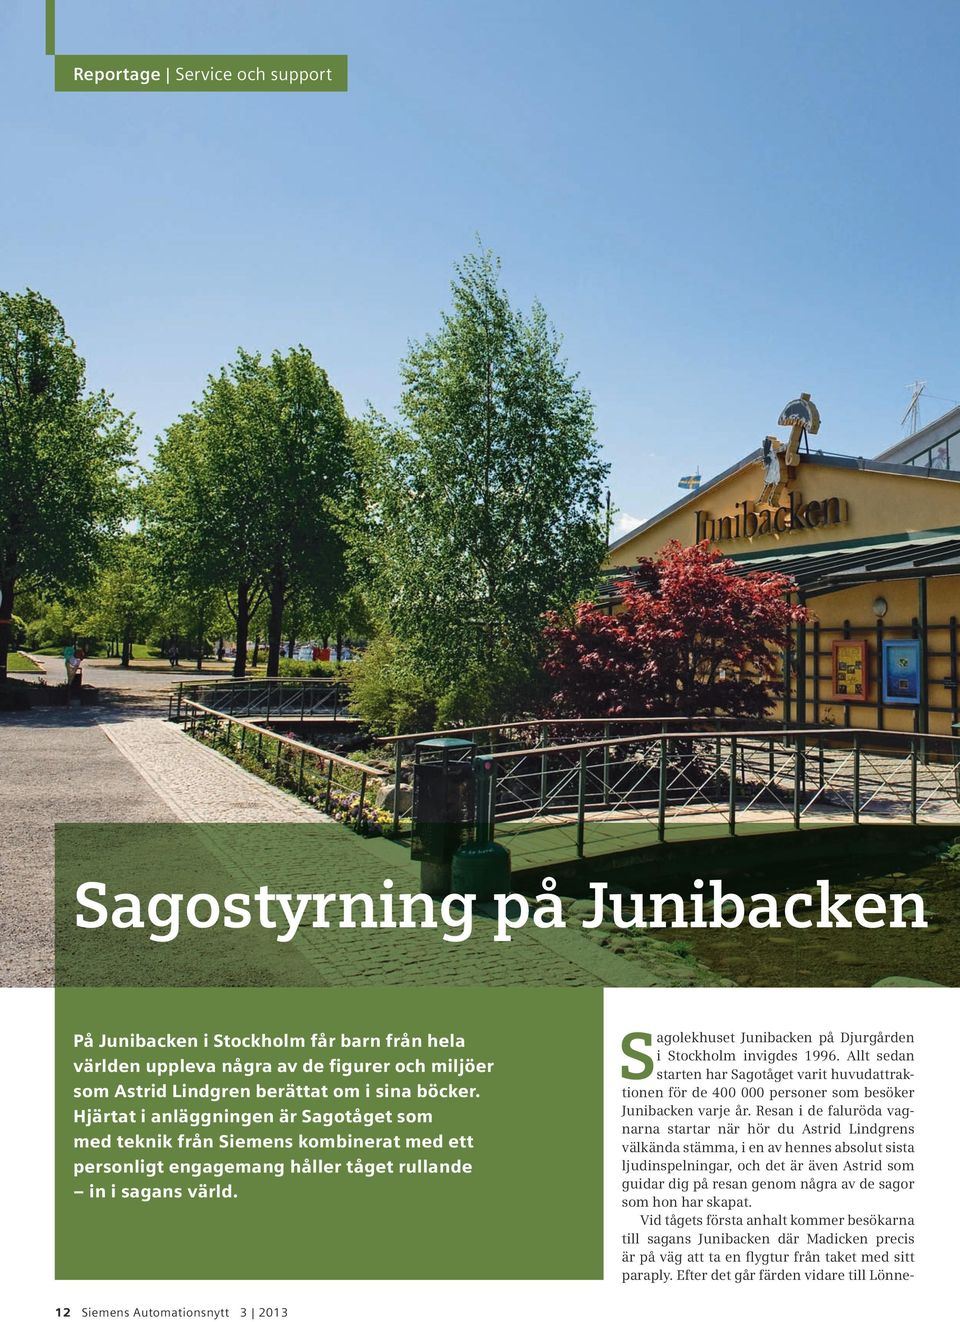 Sagolekhuset Junibacken på Djurgården i Stockholm invigdes 1996. Allt sedan starten har Sagotåget varit huvudattraktionen för de 400 000 personer som besöker Junibacken varje år.